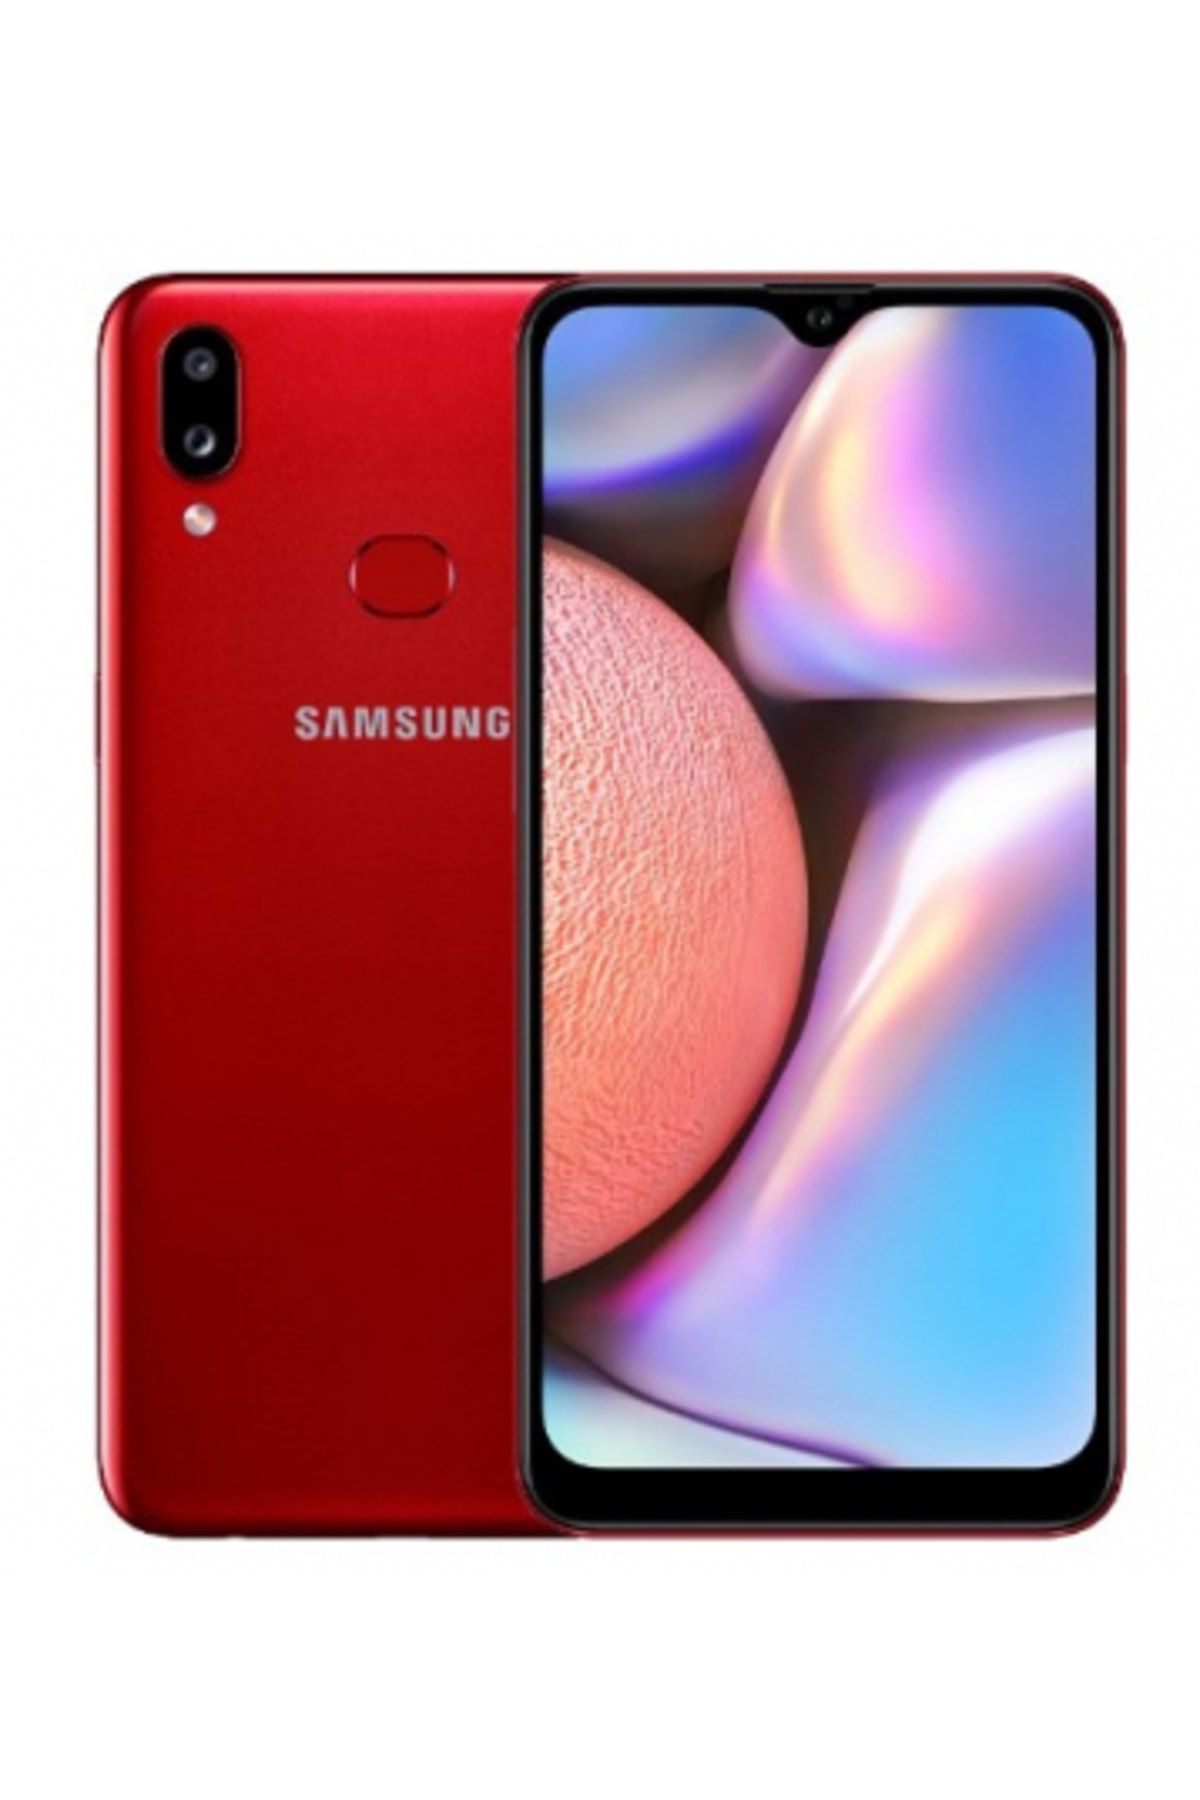 Samsung Yenilenmiş Galaxy A10s Red 32gb B Grade 12 Ay Garantili